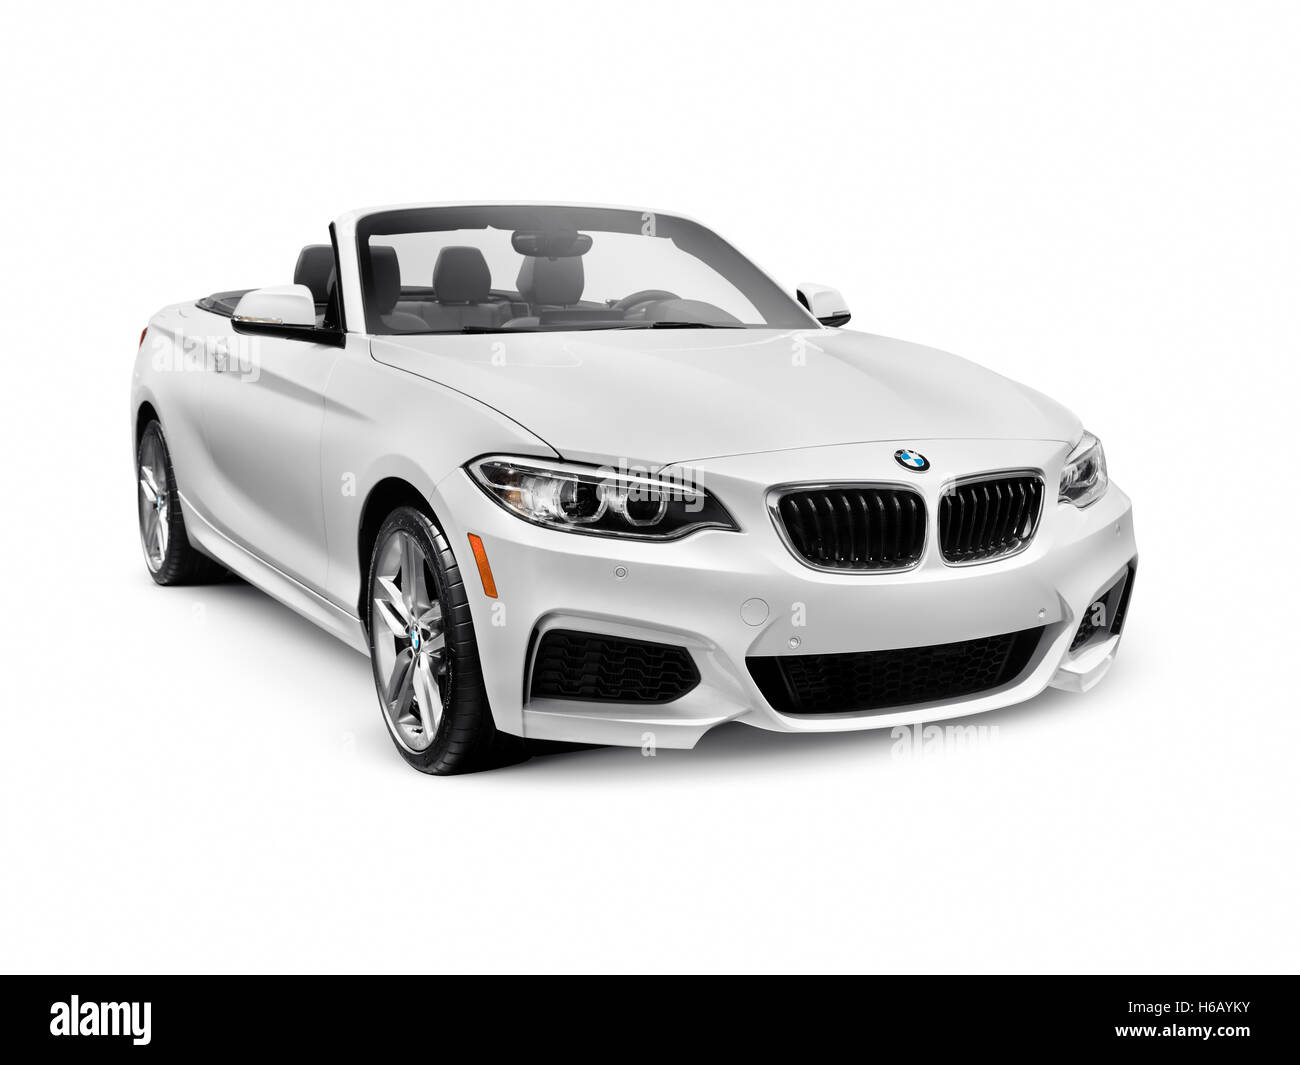 Licenza disponibile su MaximImages.com - White 2016 BMW Serie 2 Cabriolet Luxury Car isolato su sfondo bianco con percorso di ritaglio Foto Stock